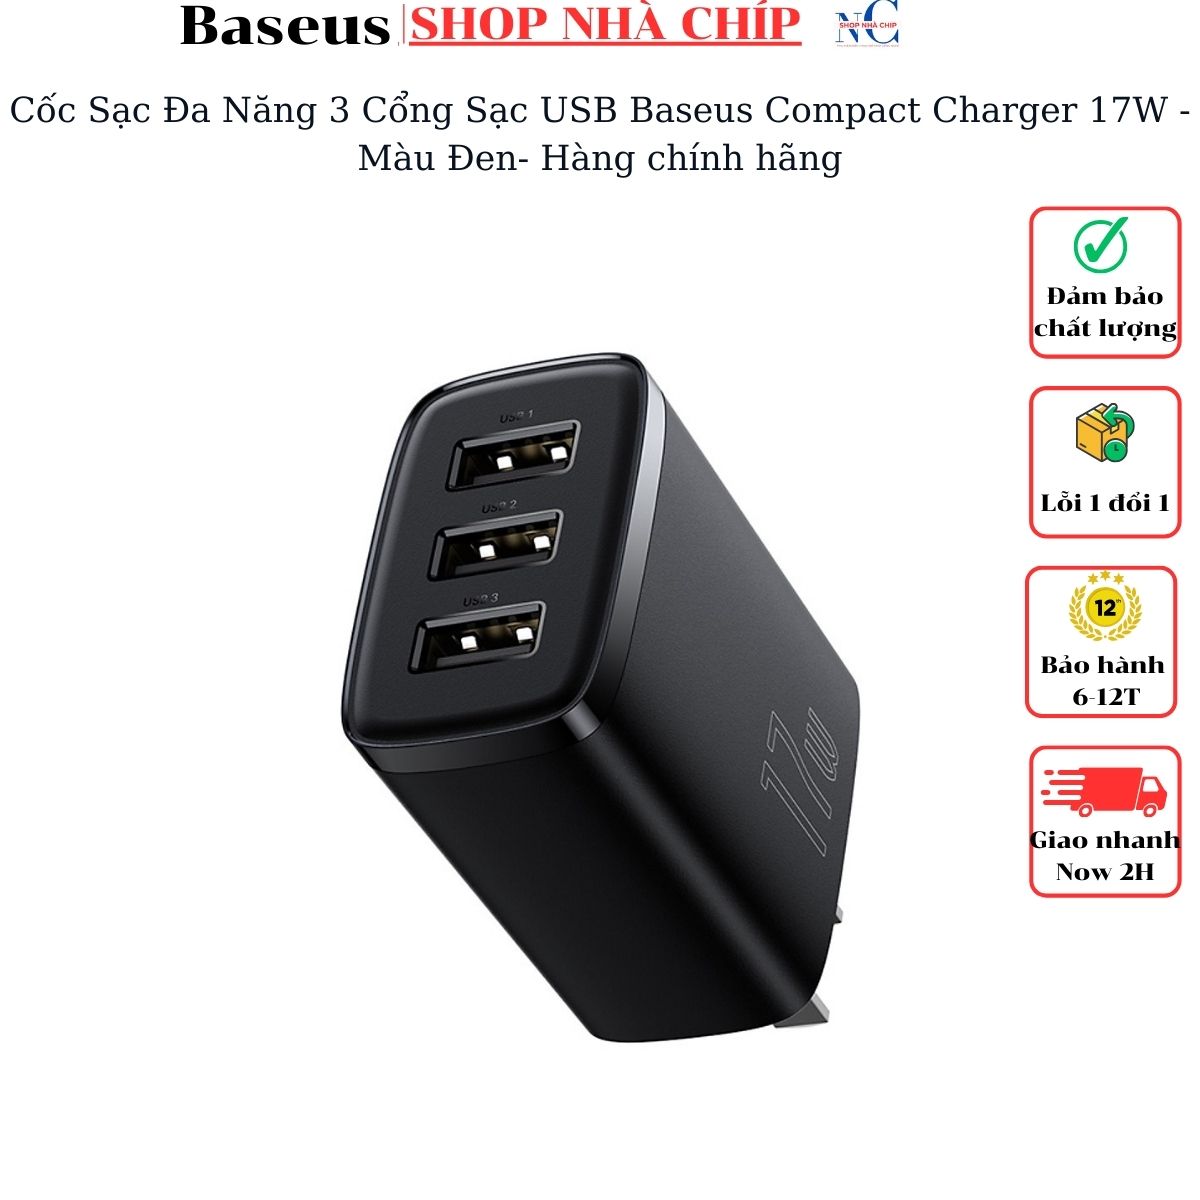 Hình ảnh Cốc Sạc Đa Năng 3 Cổng Sạc Baseus Compact Charger 17W - Hàng chính hãng